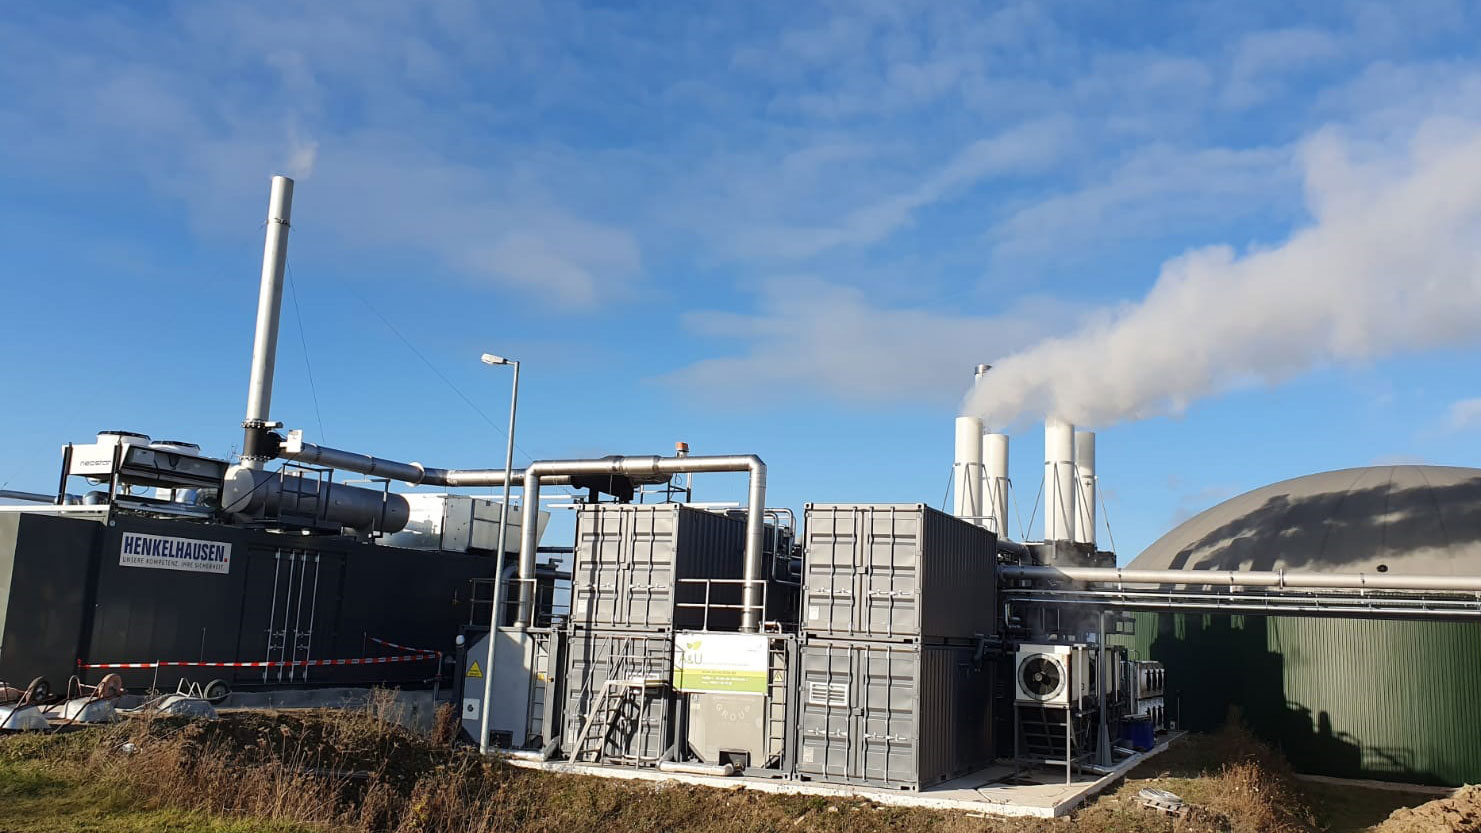 Modernste Technik in der Biogasanlage in Nohra